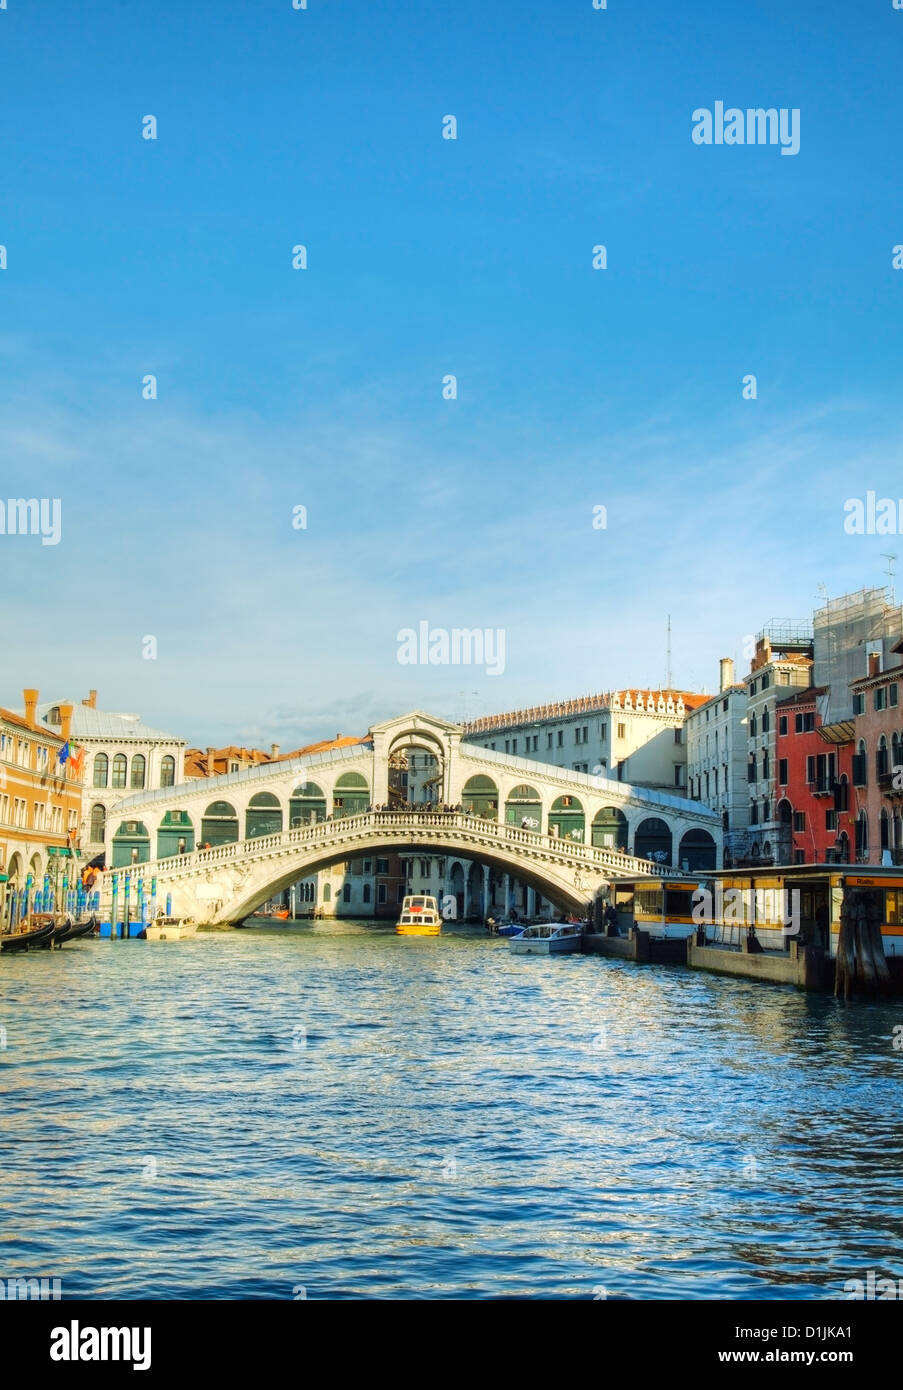 Rialto Bridge (Ponte Di Rialto) in Venice, Italy on a sunny day Stock Photo